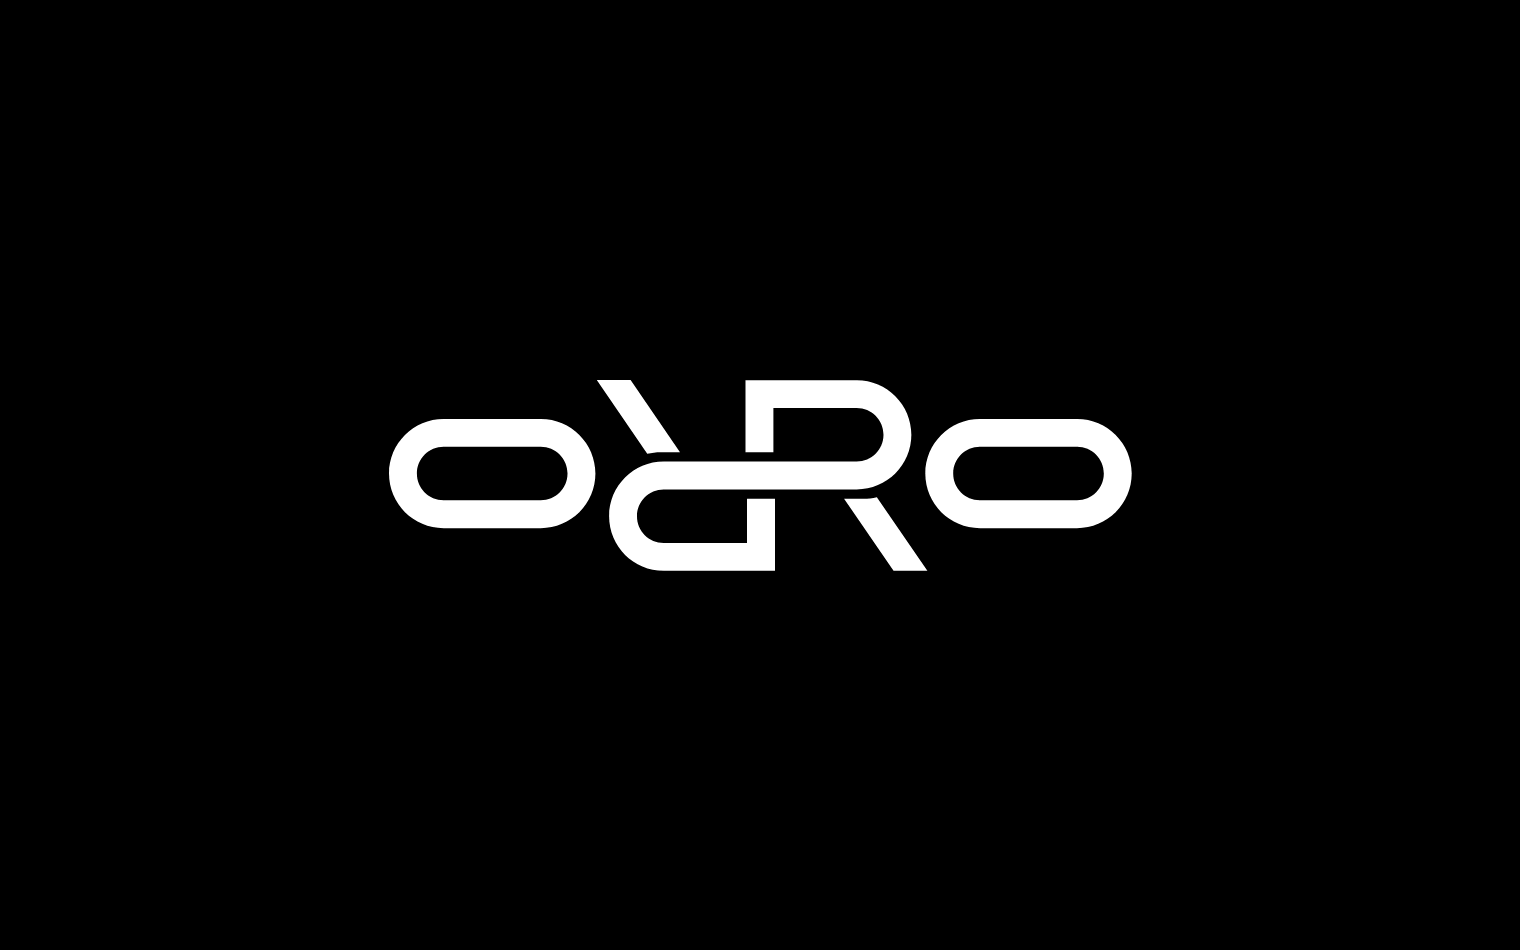 Orro | Steve Edge Design